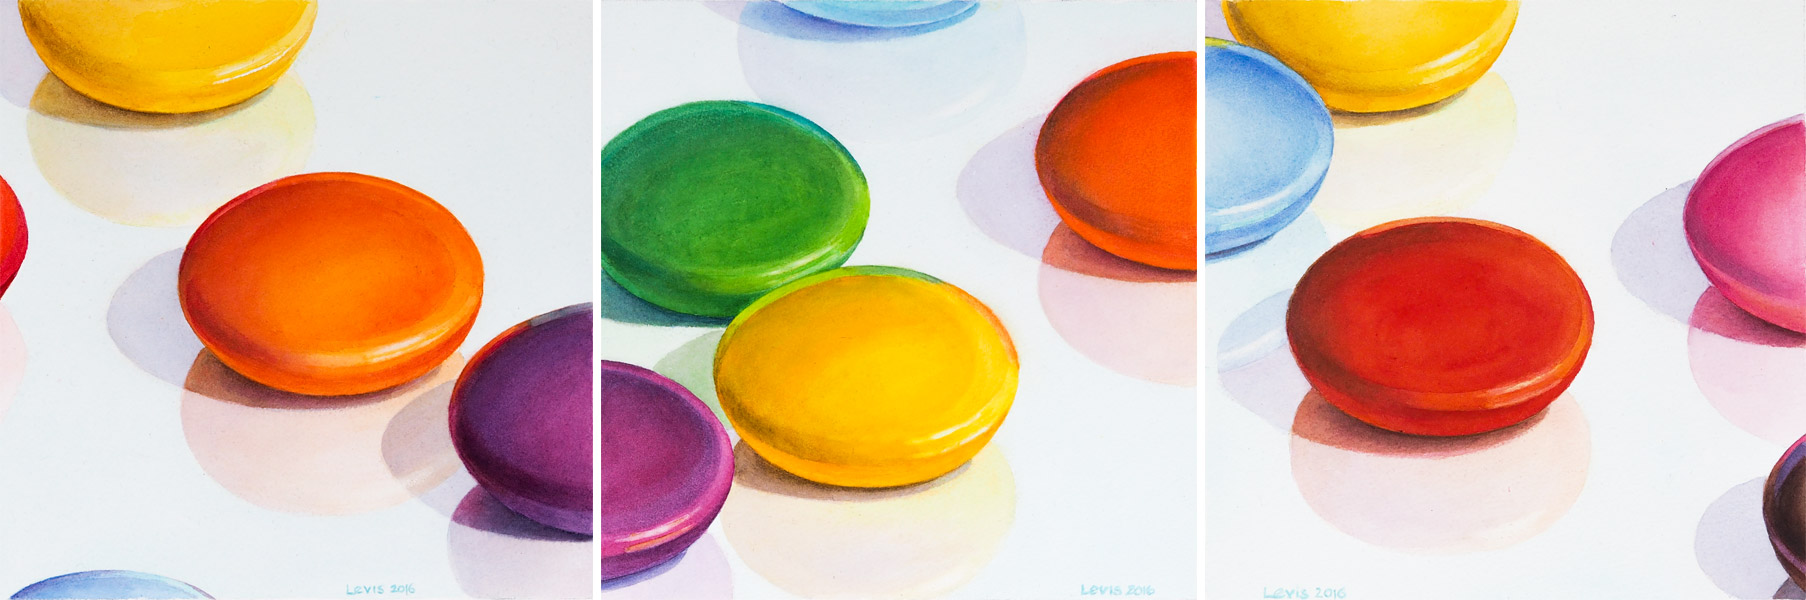 Acht Farben: Smarties: Dreiteilig - Jeweils einige bunte Smarties auf reflektierender Fläche. Watercolor, 25 x 75cm. Artwork by Petra Levis